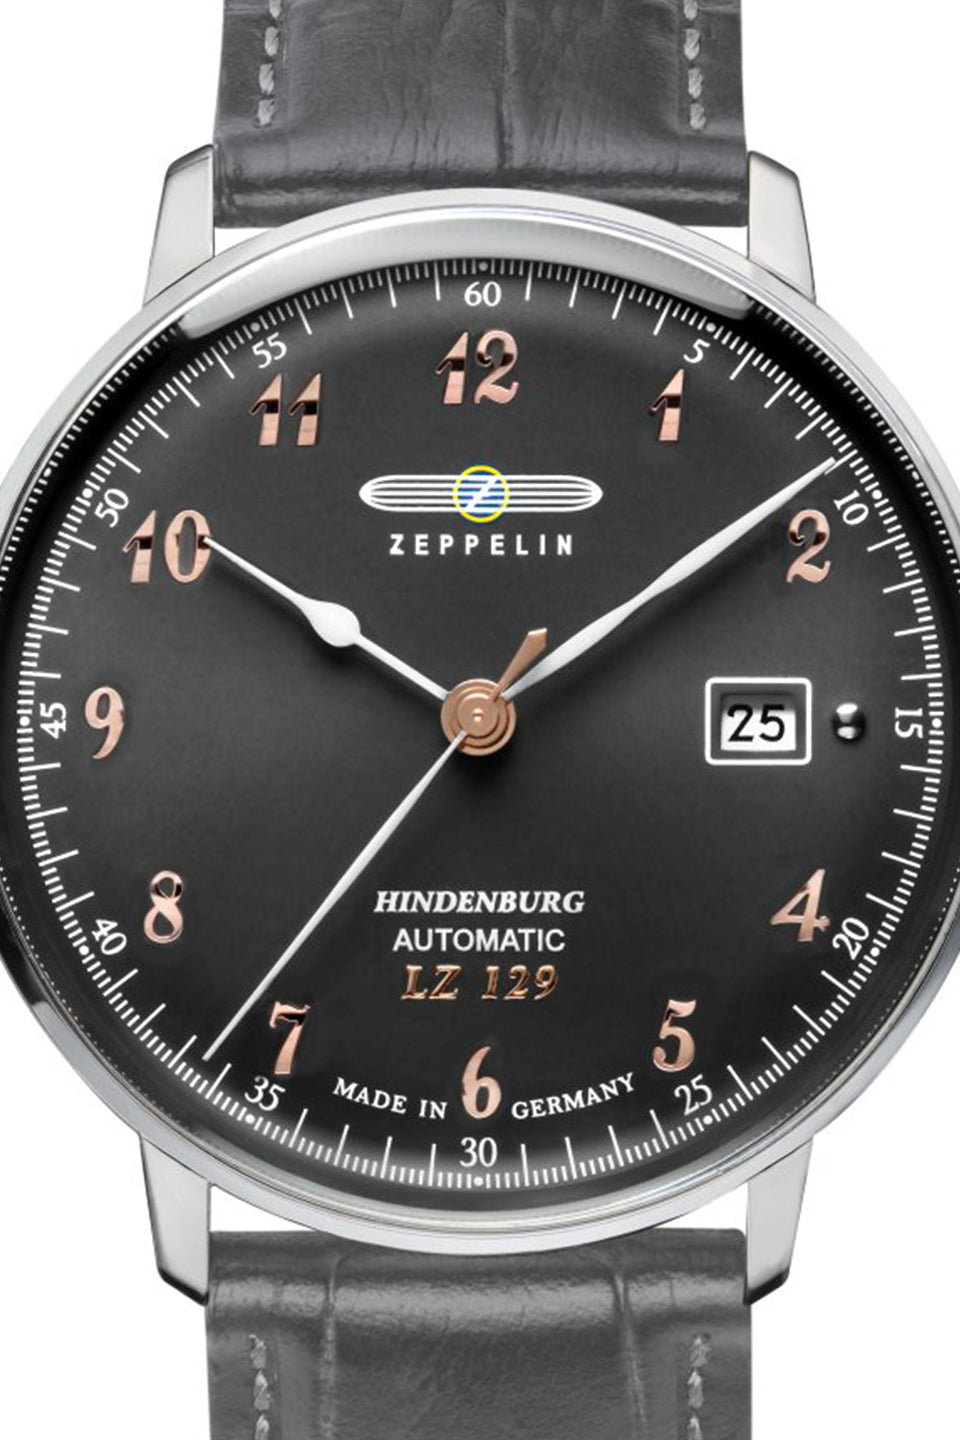 Zeppelin 7066-2 LZ 129 Hindenburg Automatic